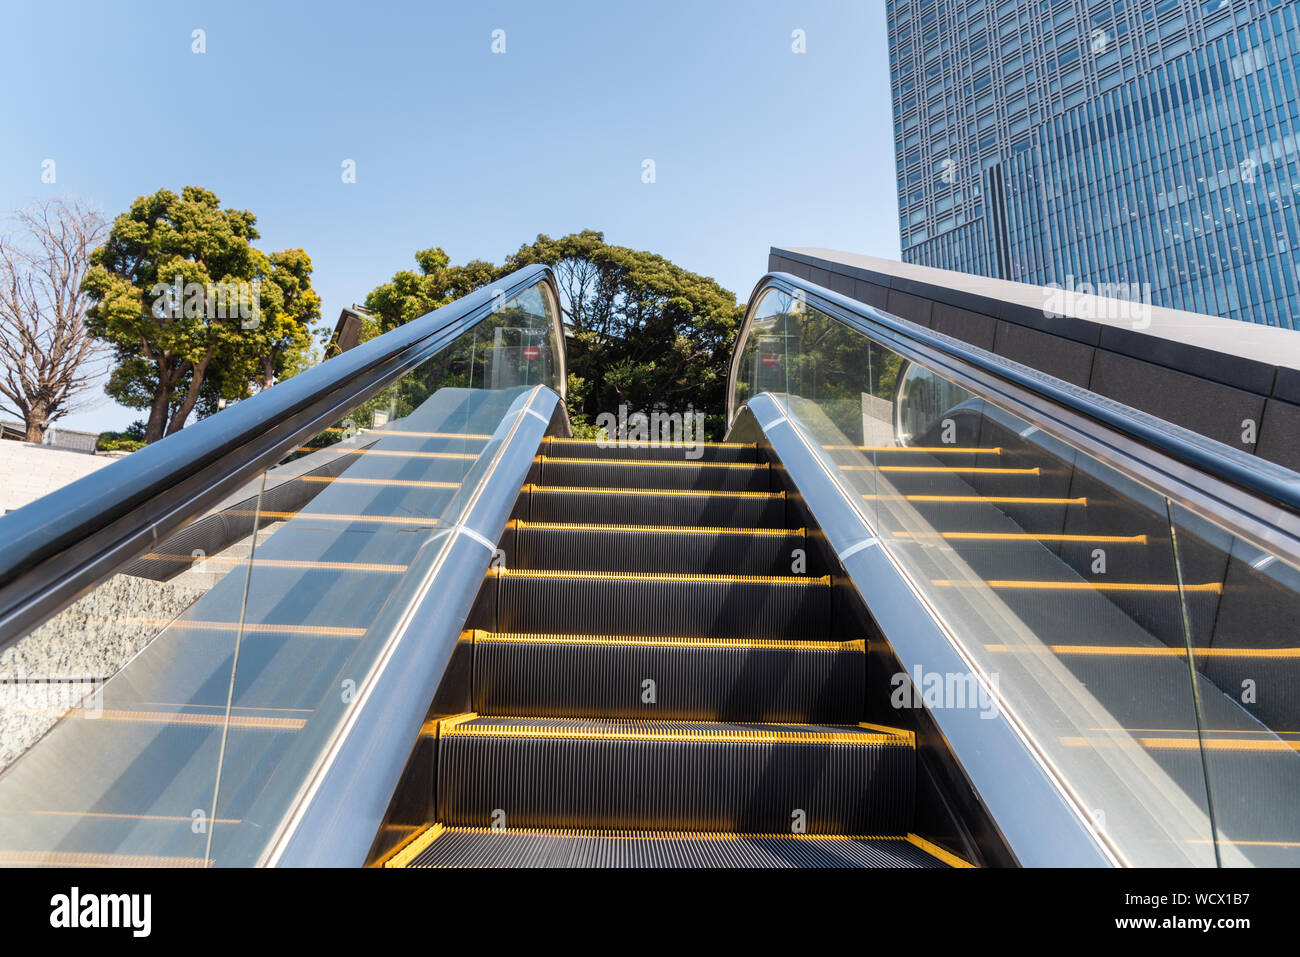 Deserta escalator per esterni in un quartiere d' affari su una soleggiata giornata invernale Foto Stock